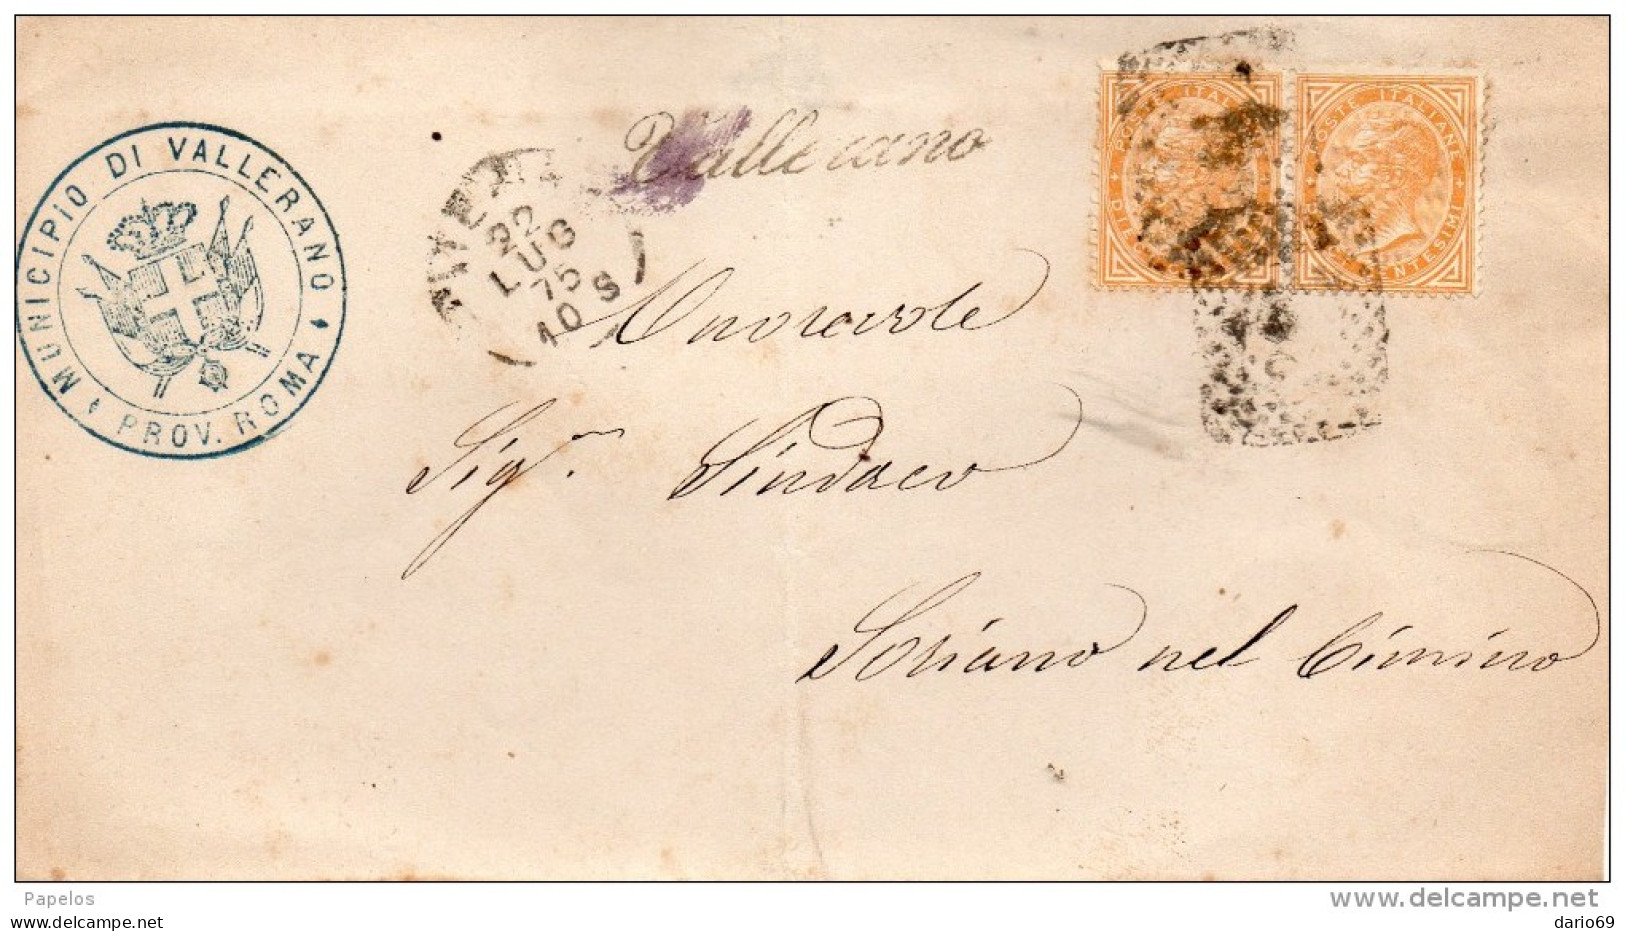 1875   LETTERA CON ANNULLO VALLERANO IN CORSIVO ROMA - Poststempel